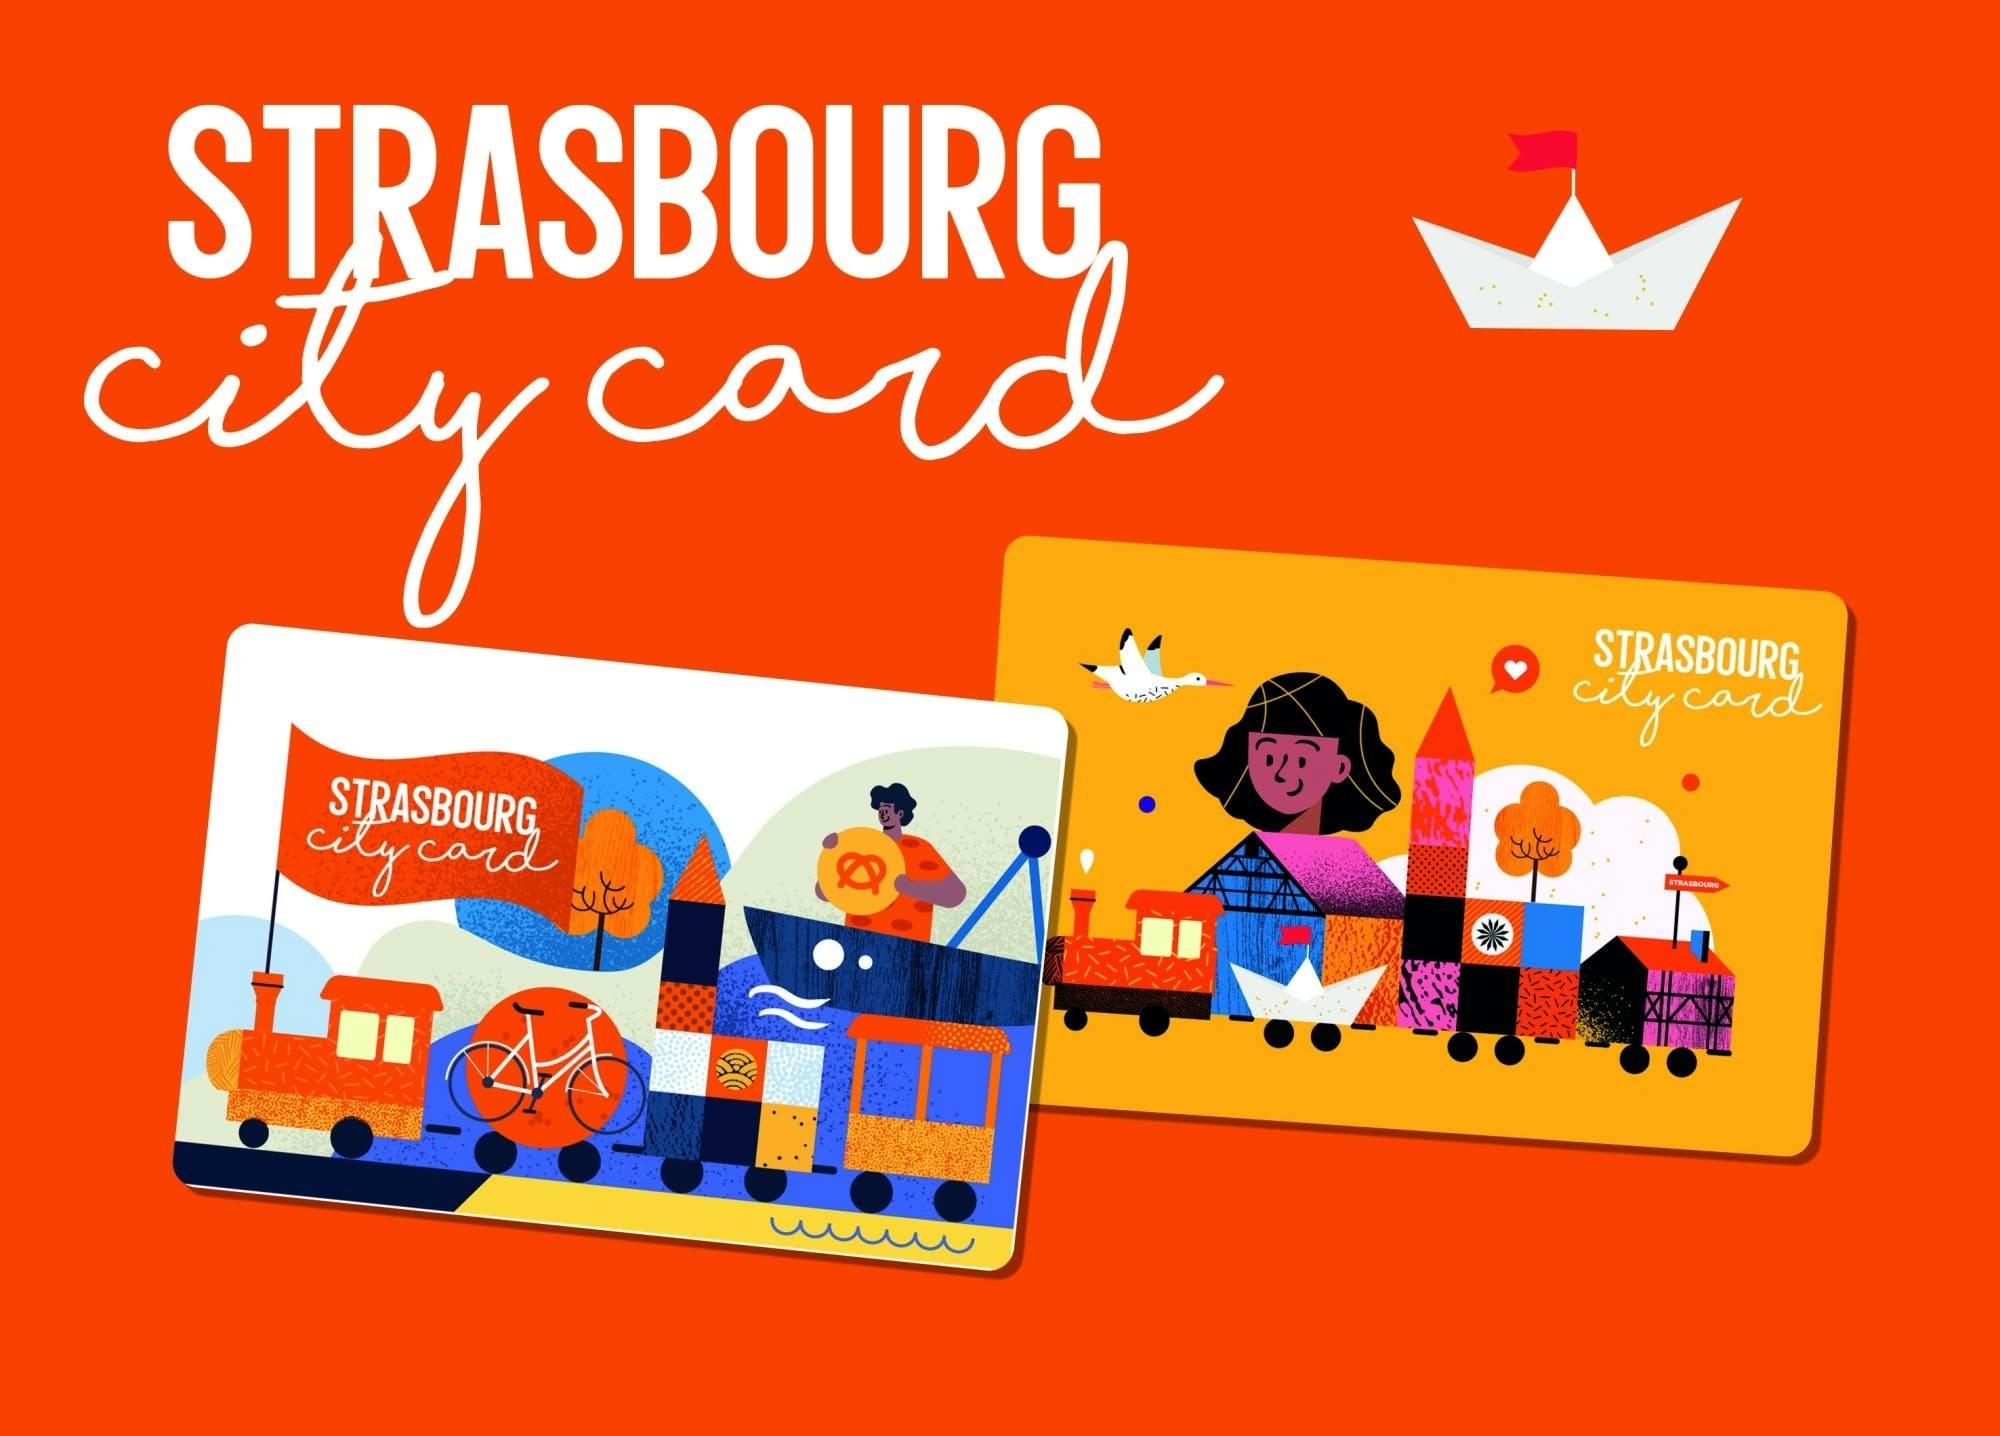 Cartão da cidade de Estrasburgo